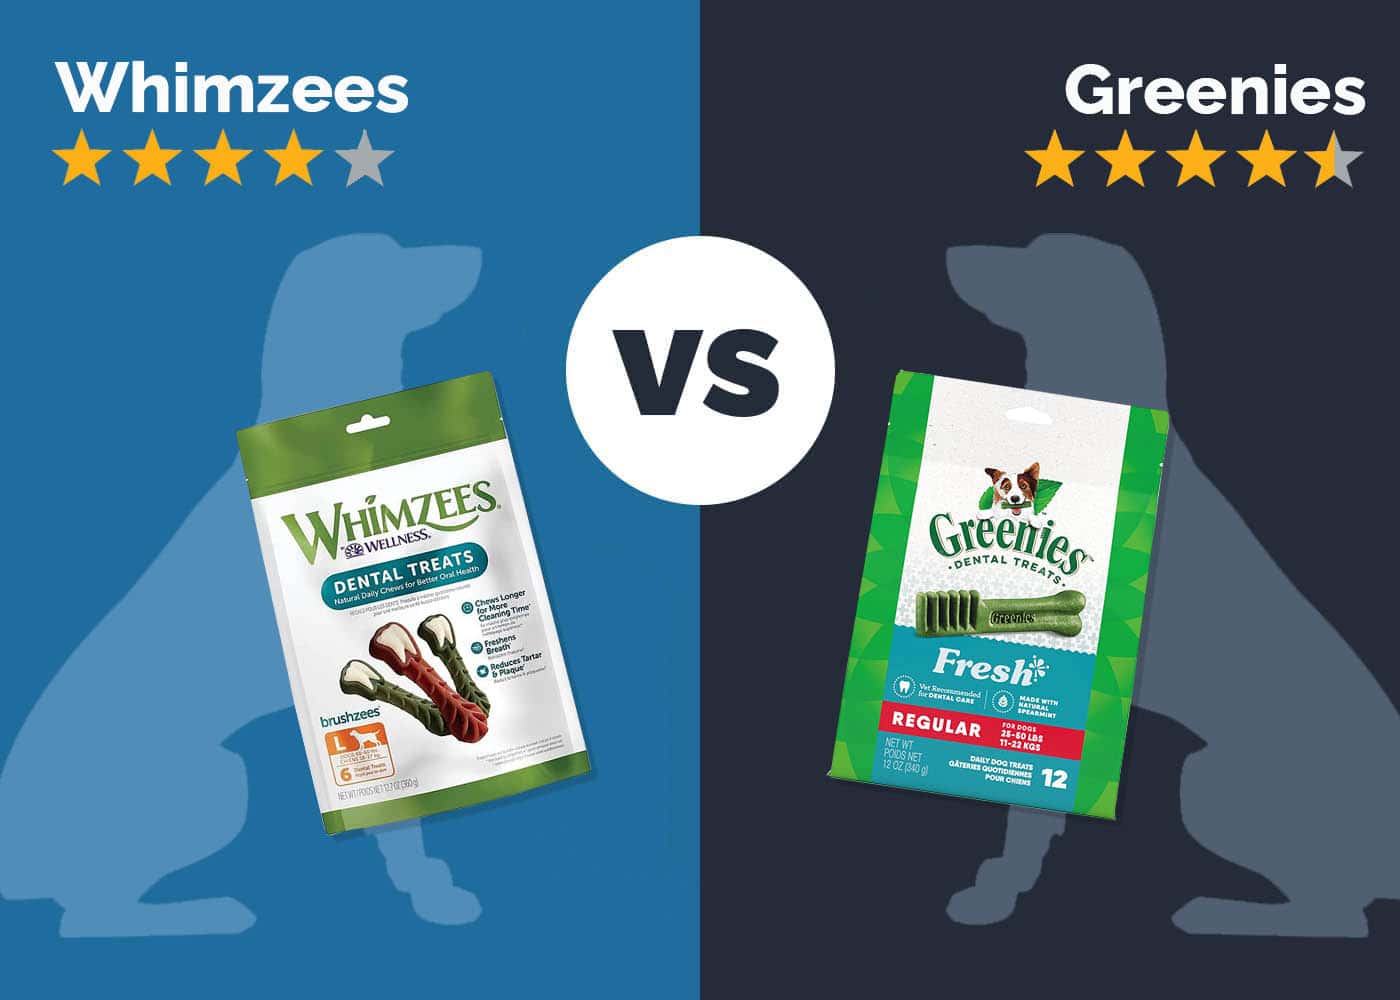 Whimzees vs Greenies